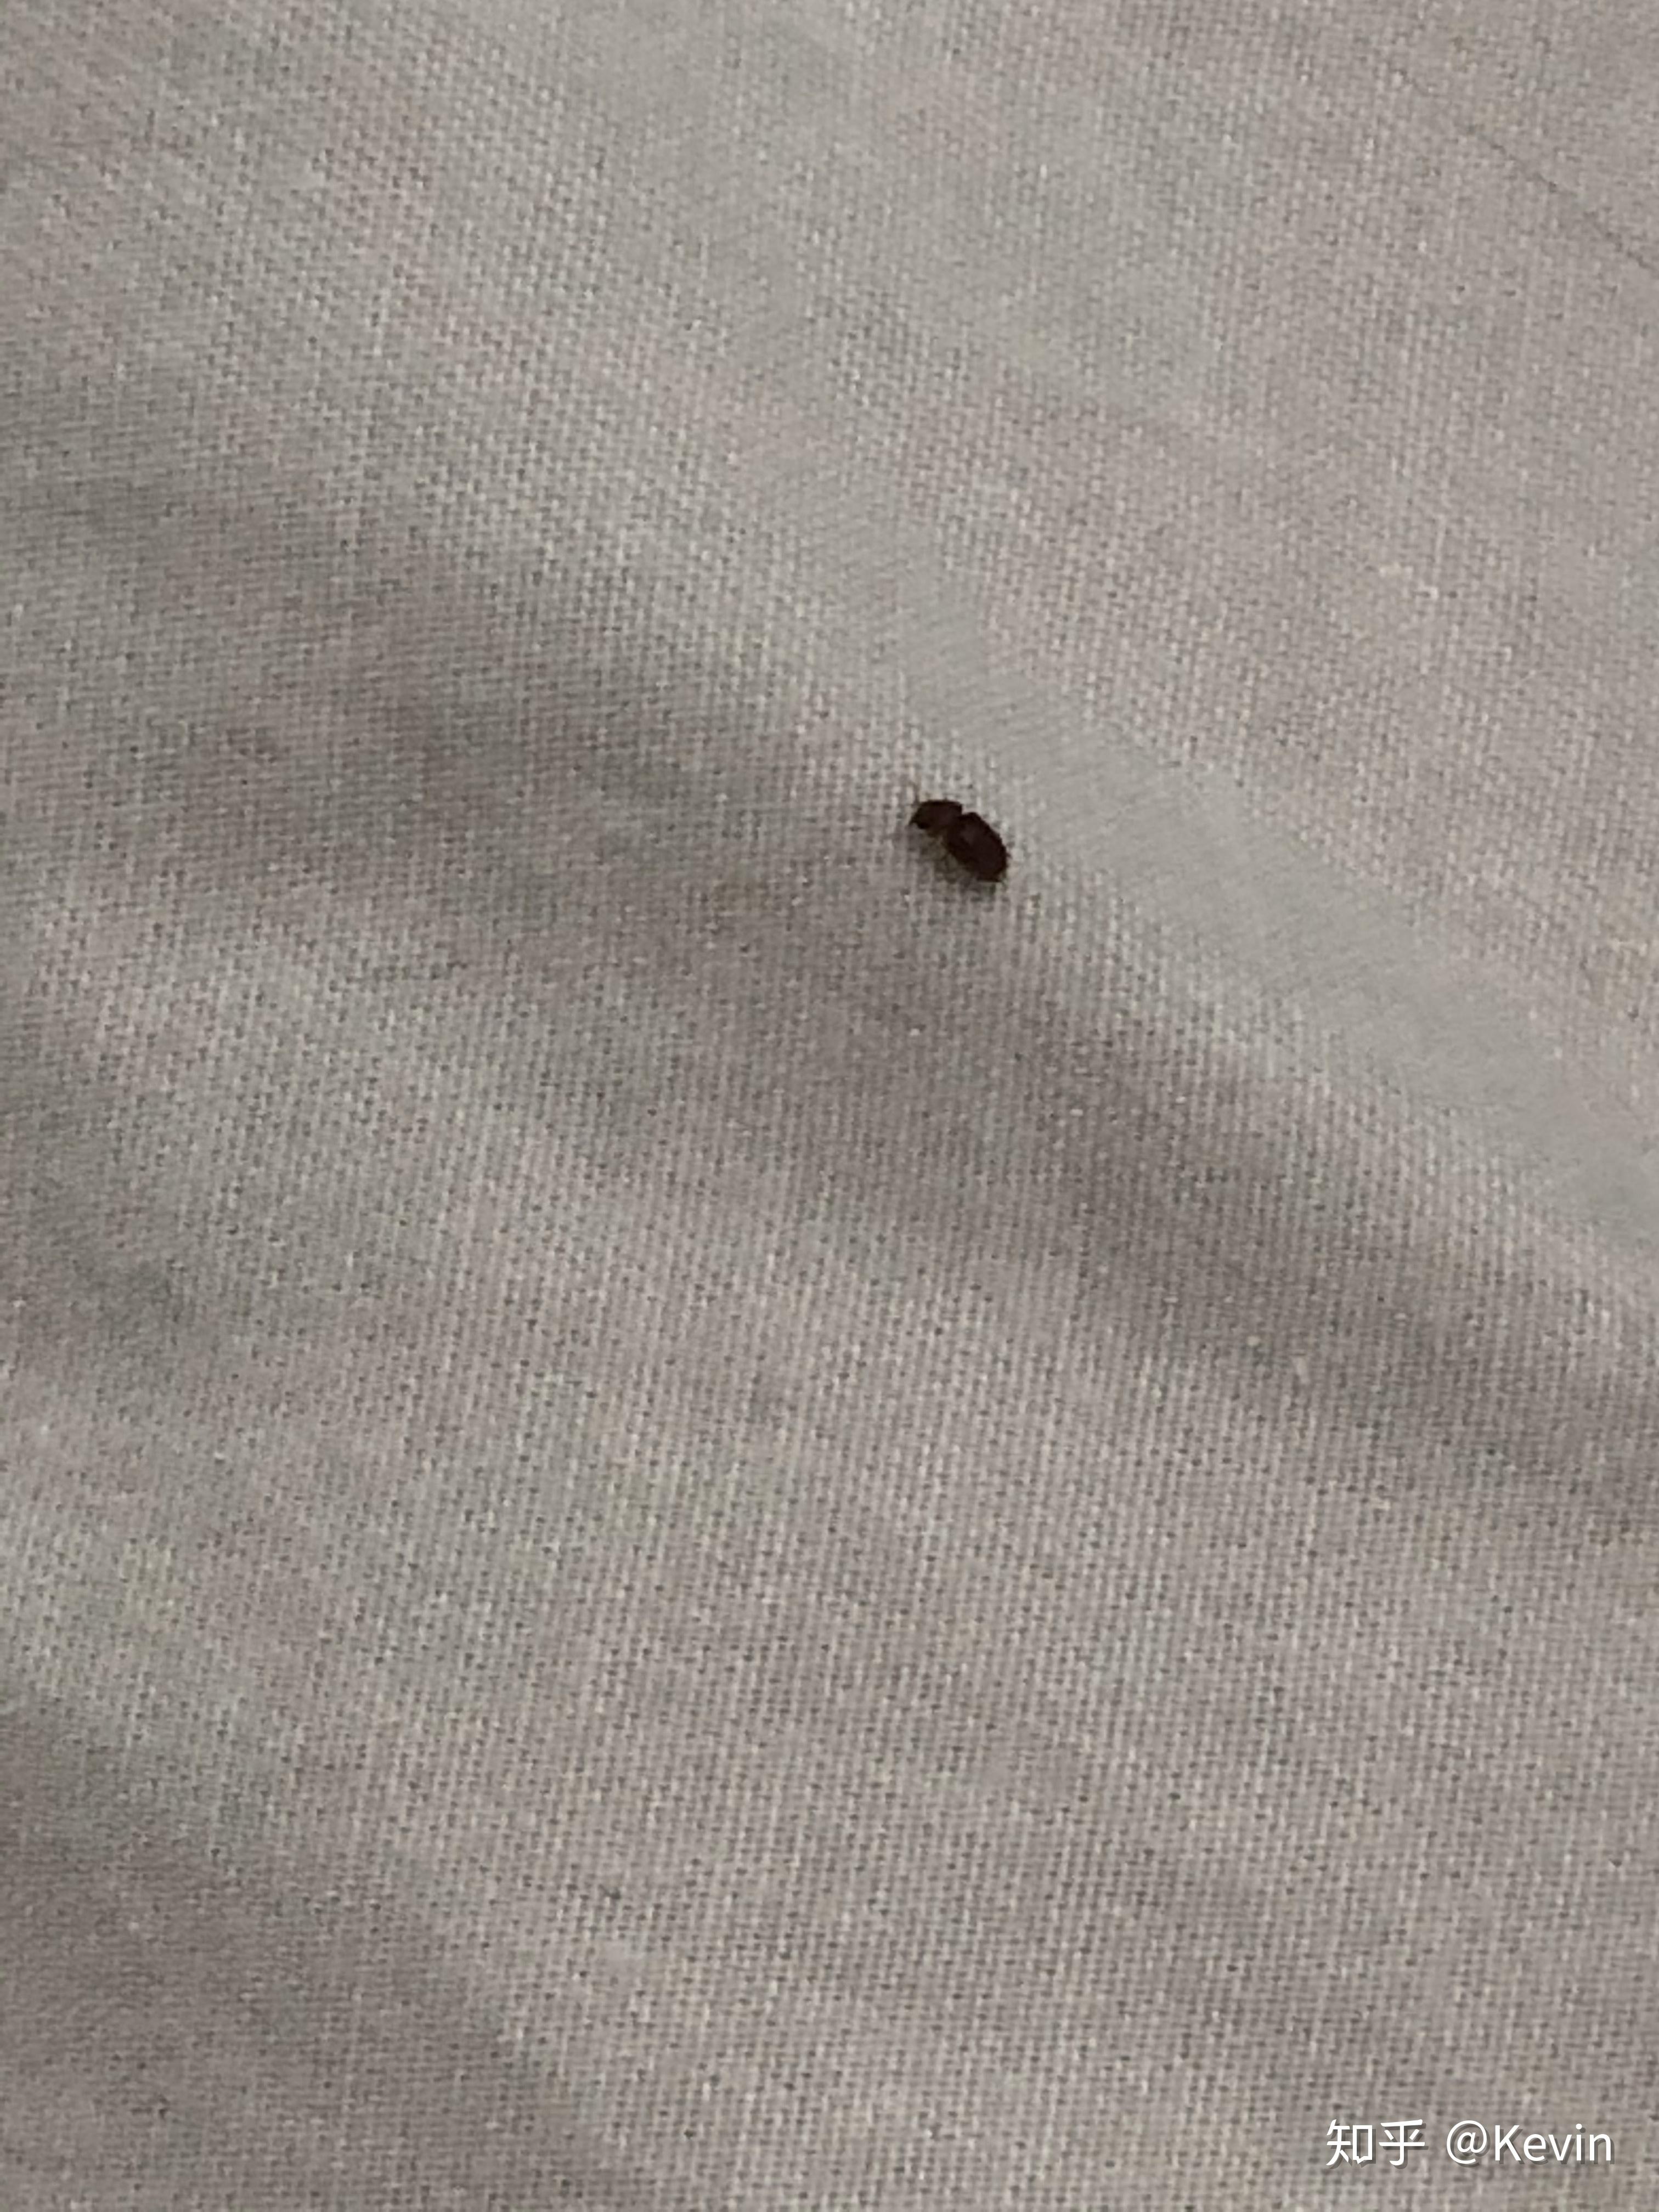 家里卧室突然出现一种红色的小虫子 很小 圆形 爱往墙上 床上 灯附近爬 不知道咬不咬人_百度知道